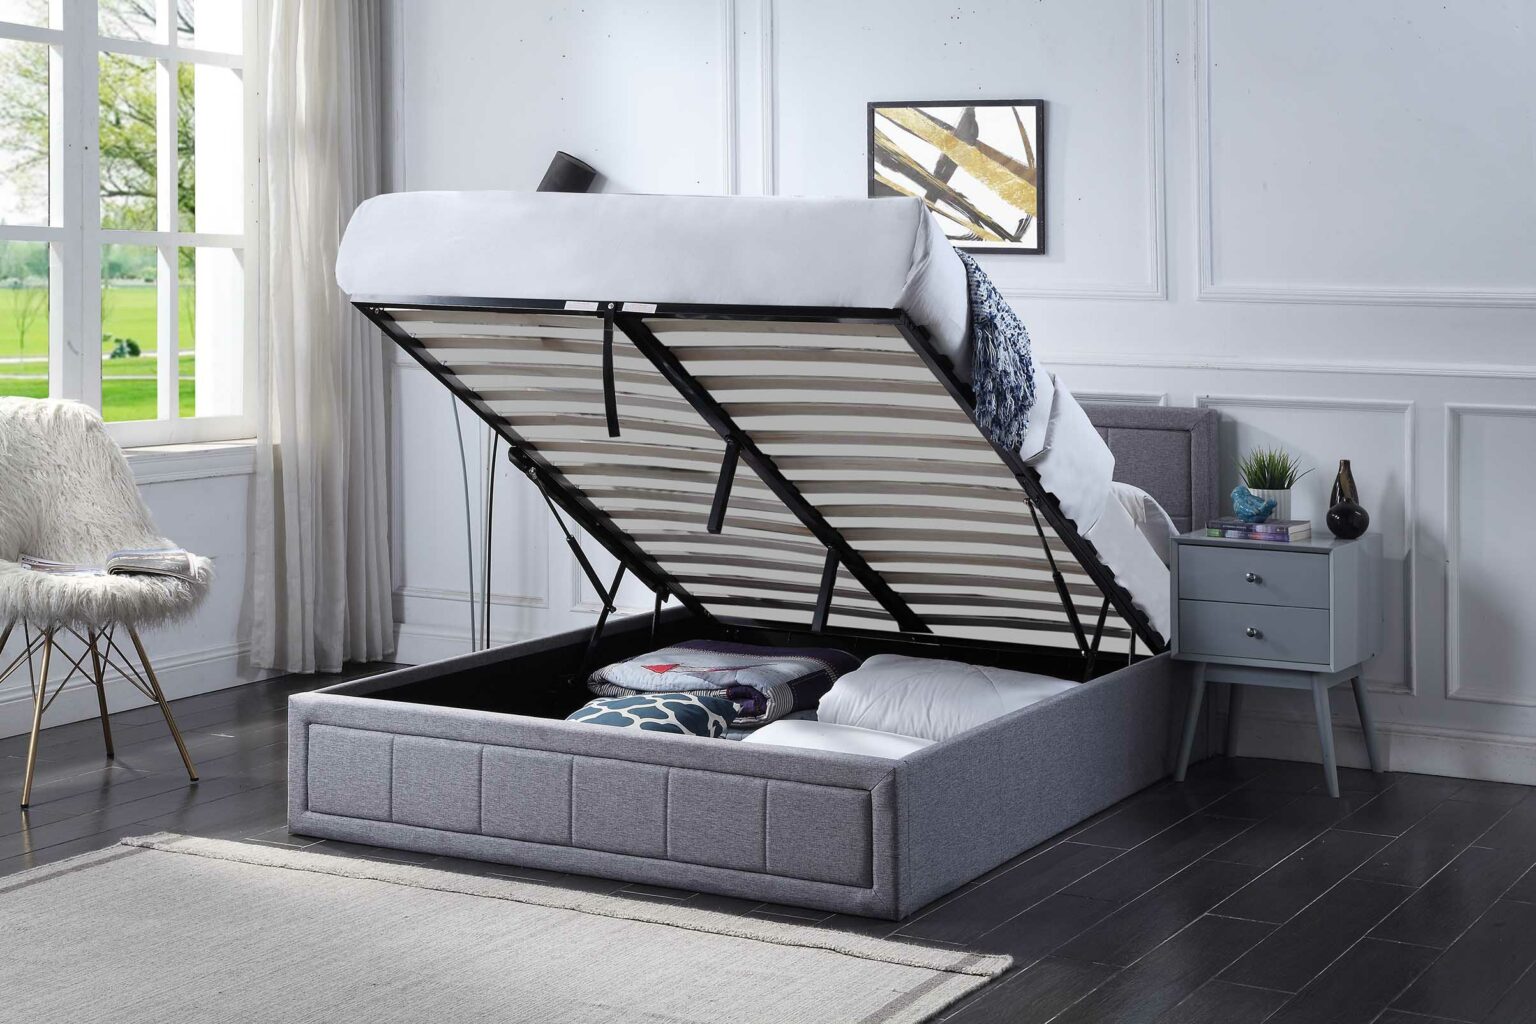 ottoman beds and mattress